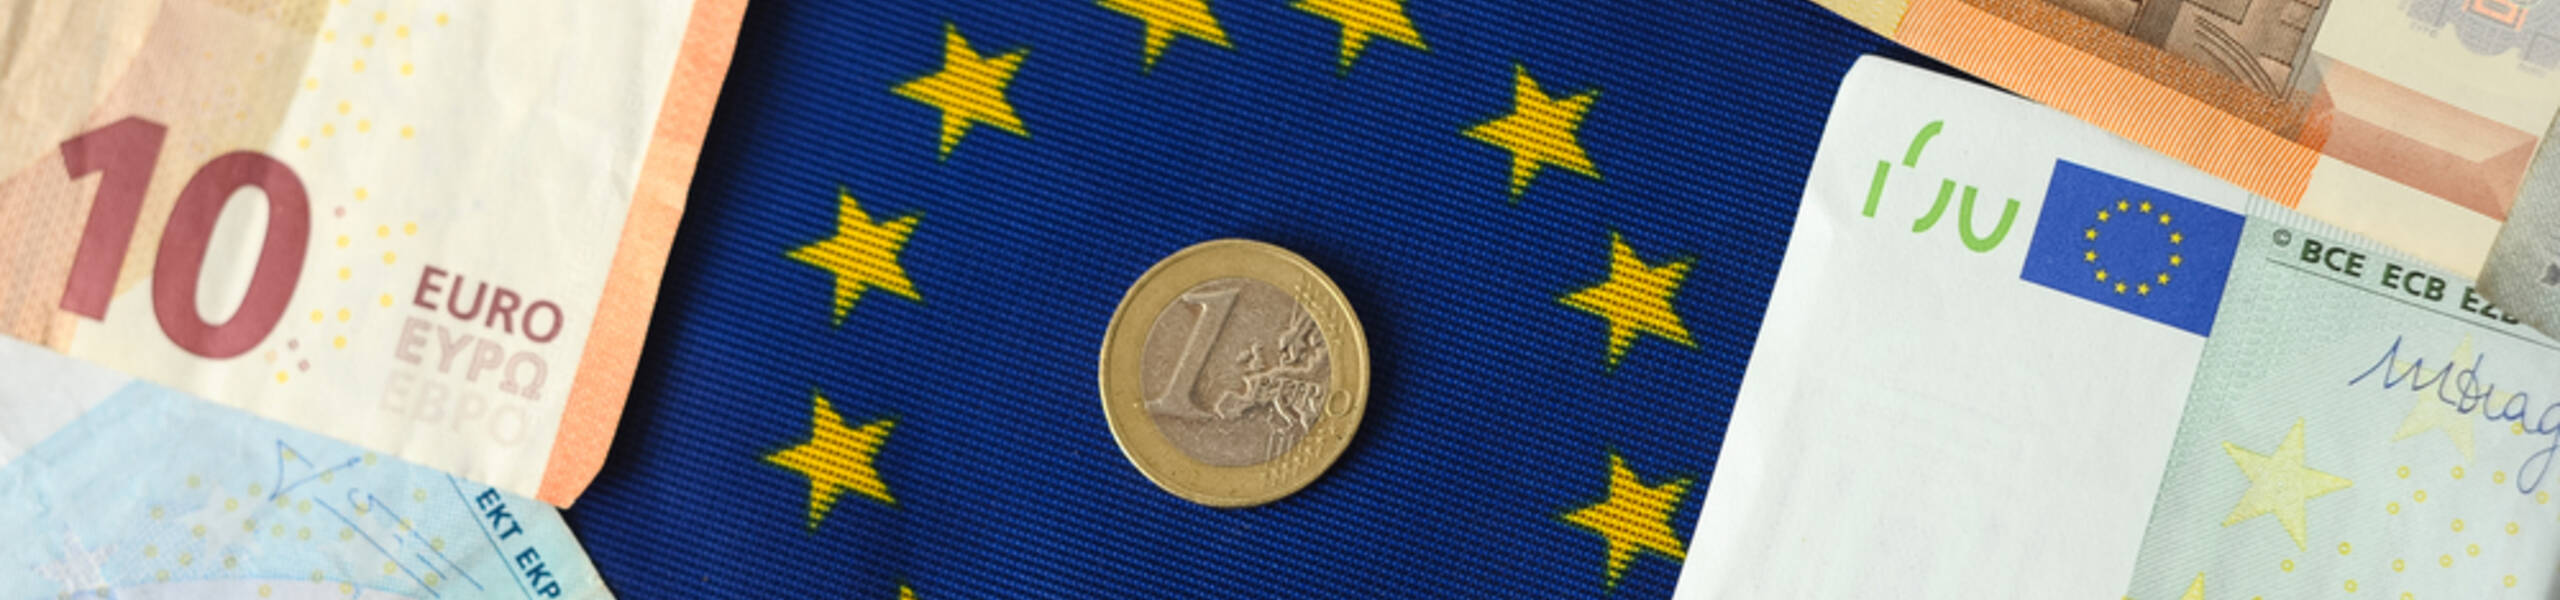 EUR/JPY: Uncertainties around the EUR 